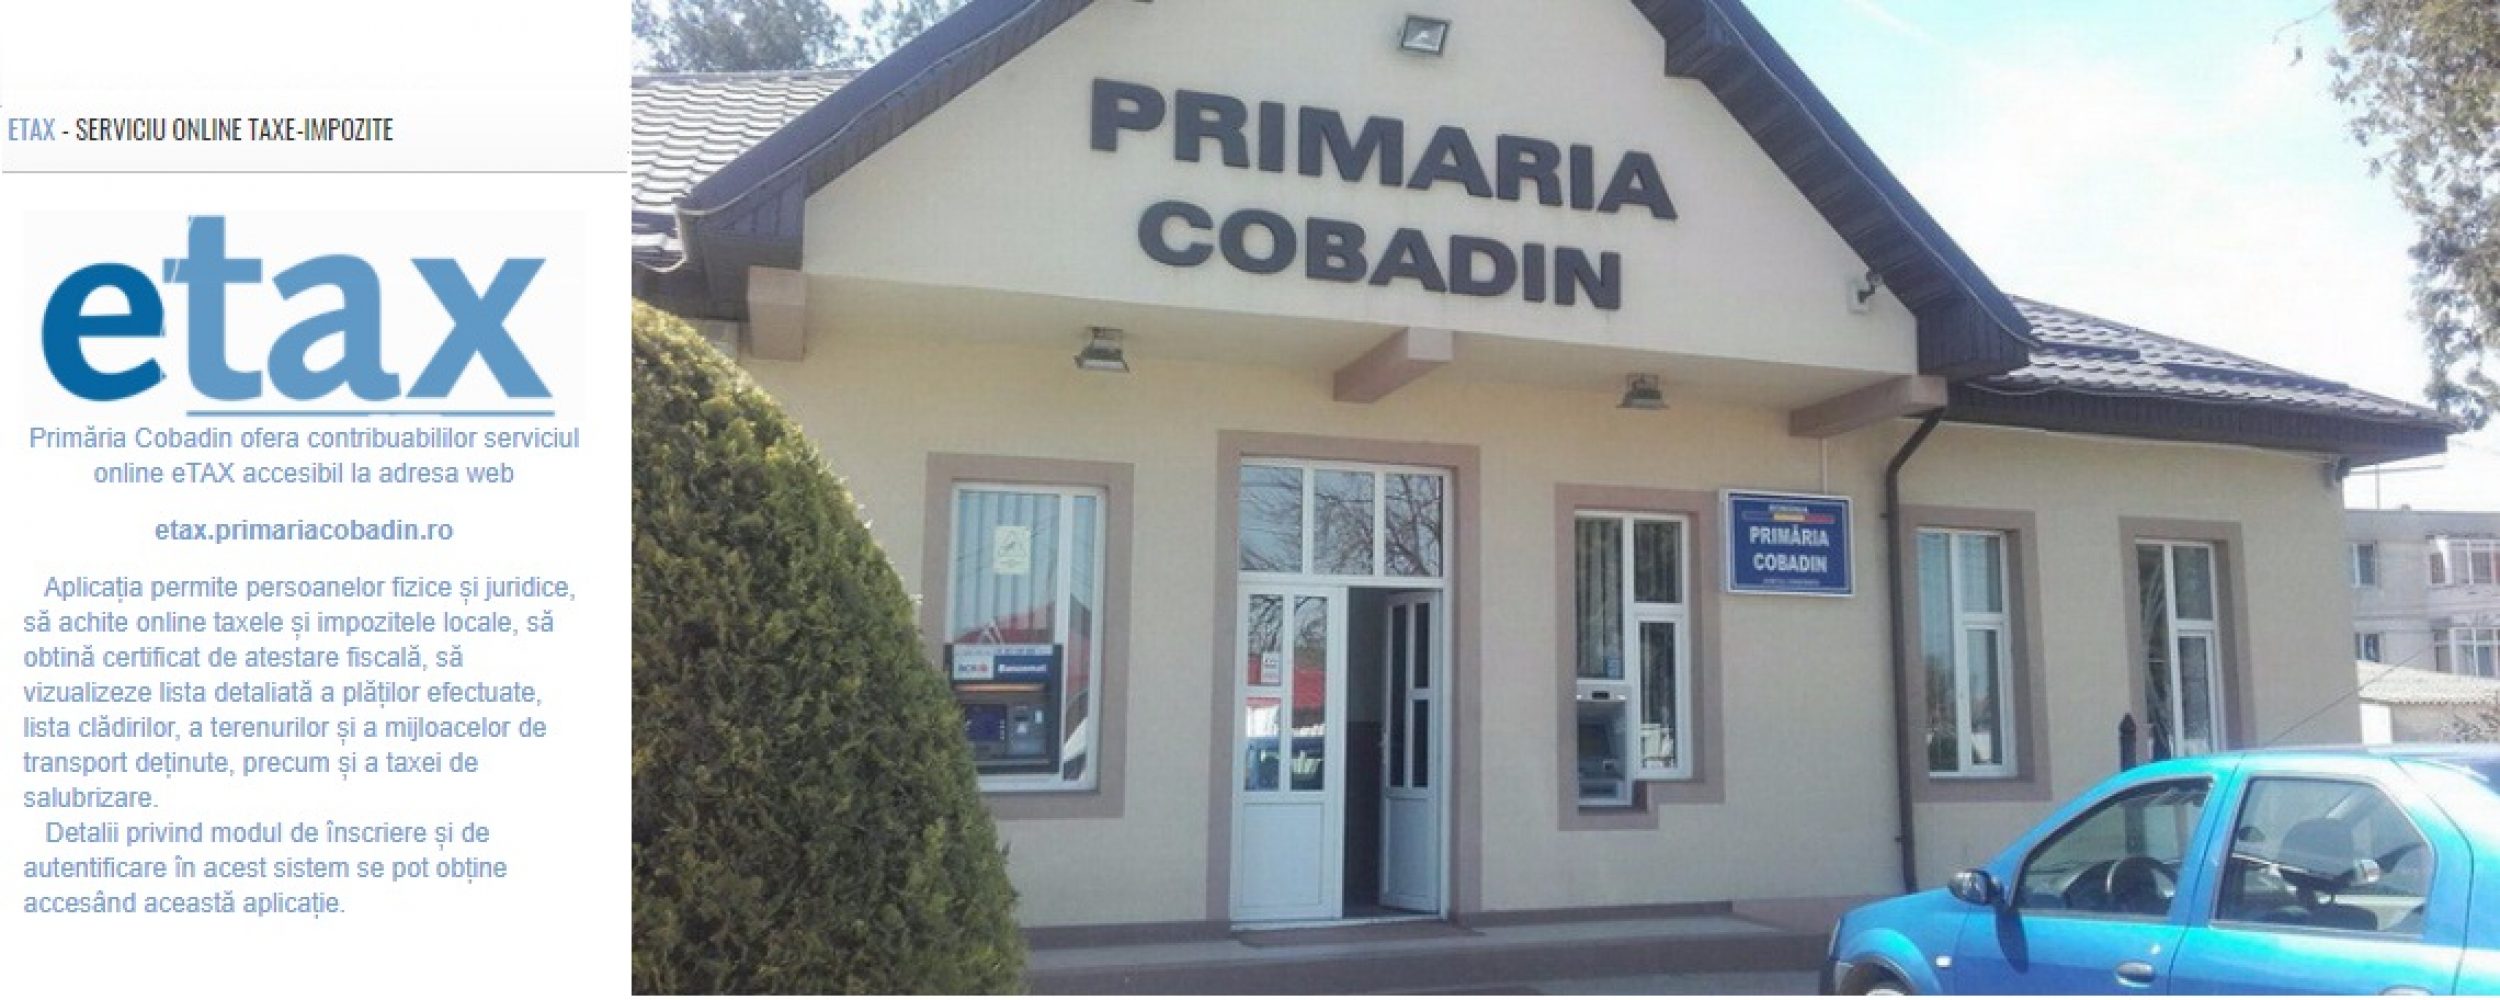 Primaria Cobadin